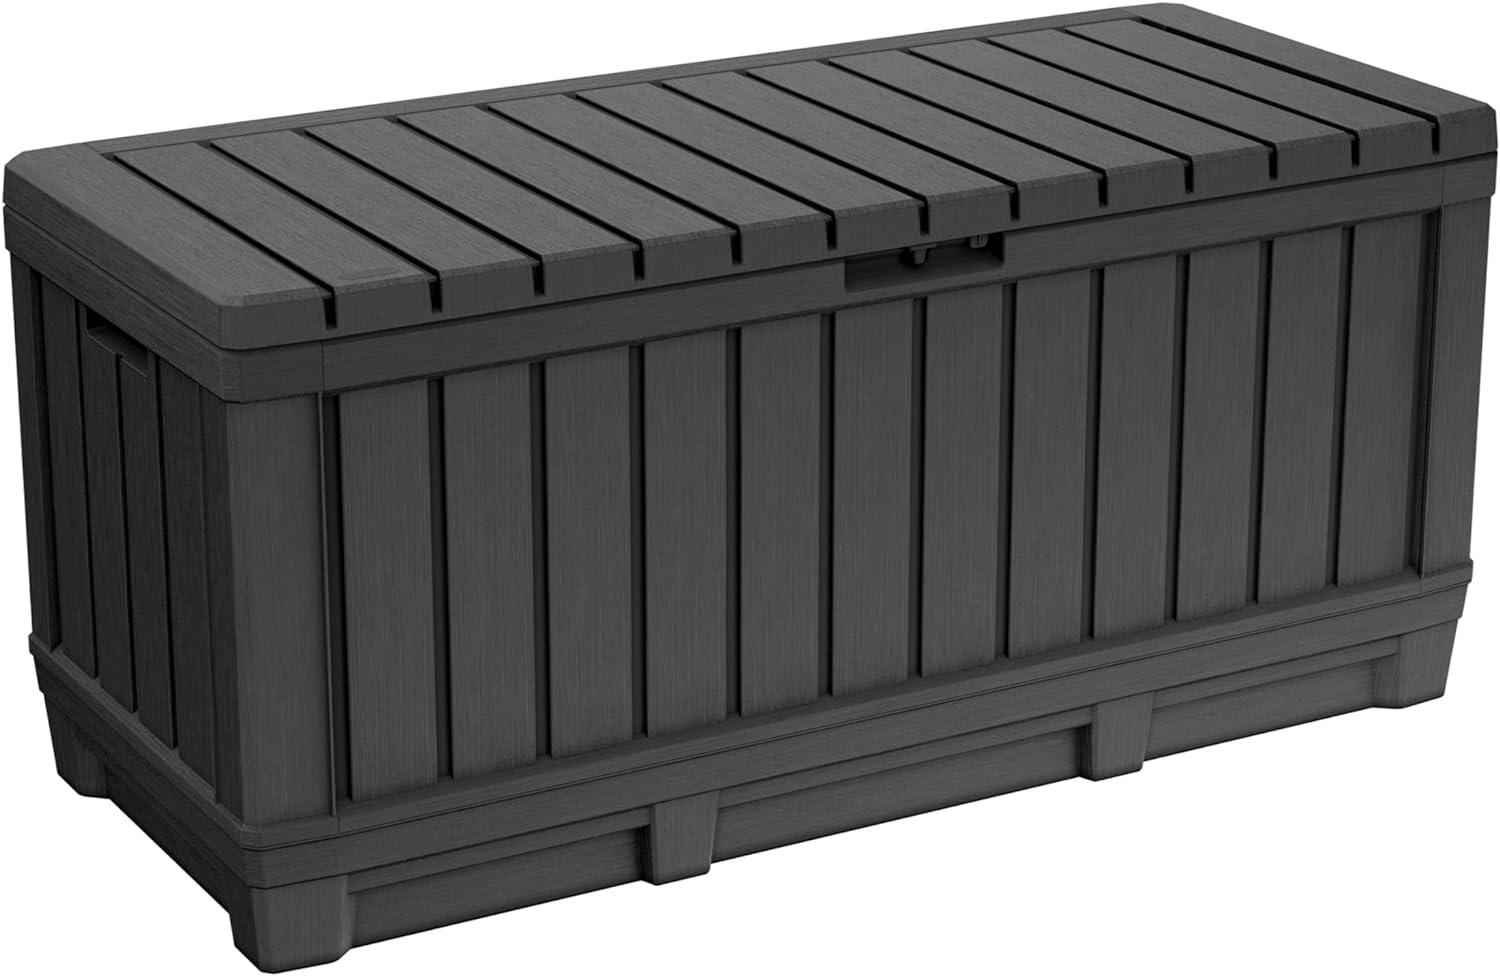 Keter Auflagenbox Aufbewahrungsbox 350l Kunststoff Kissenbox Balkonbox Gartenbox Bild 1